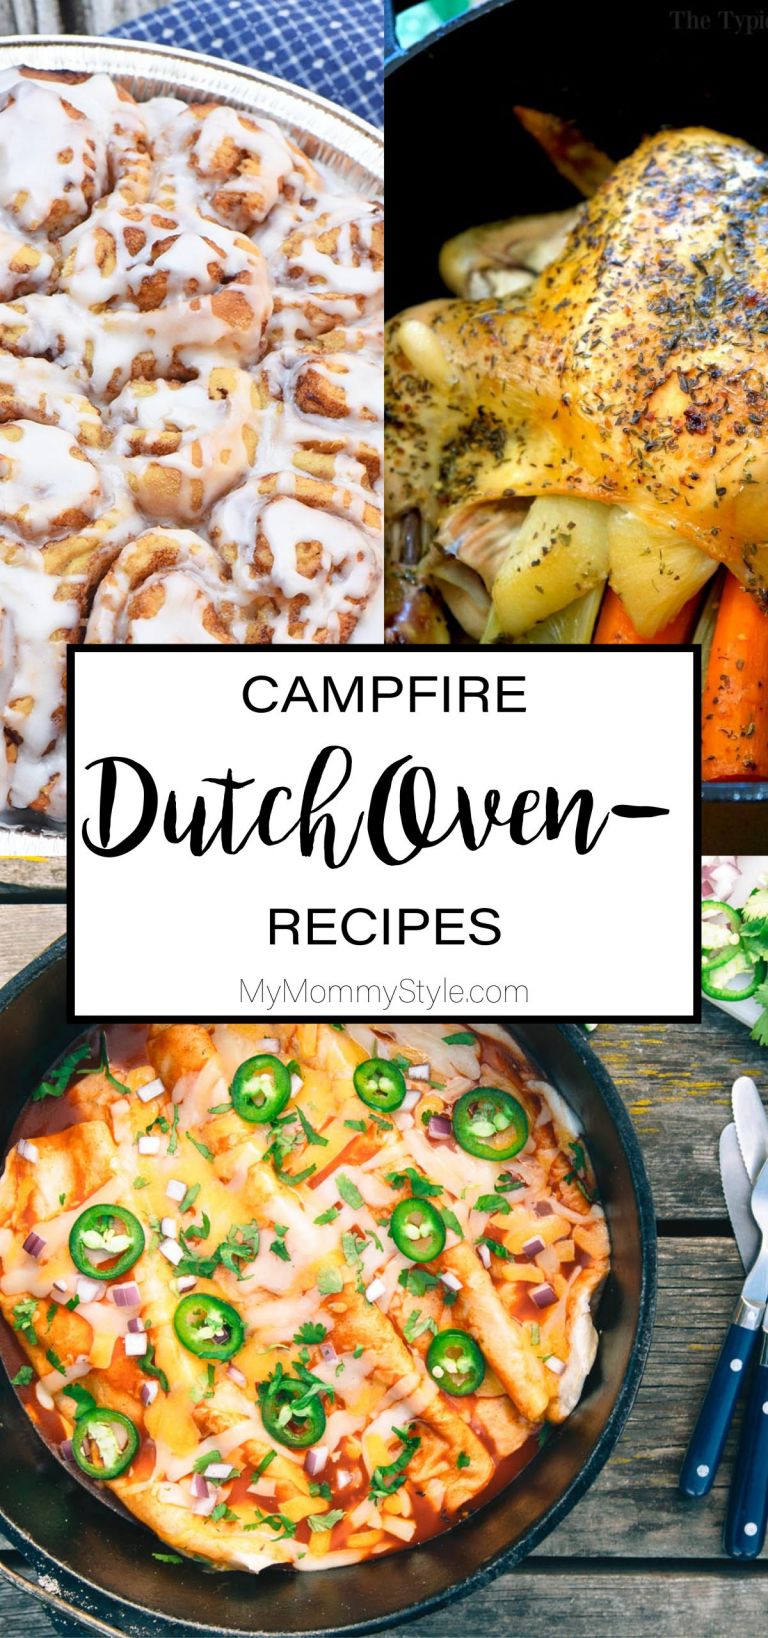 40 Best Dutch Oven Camping Recipes: Breakfast, Dinner & Dessert